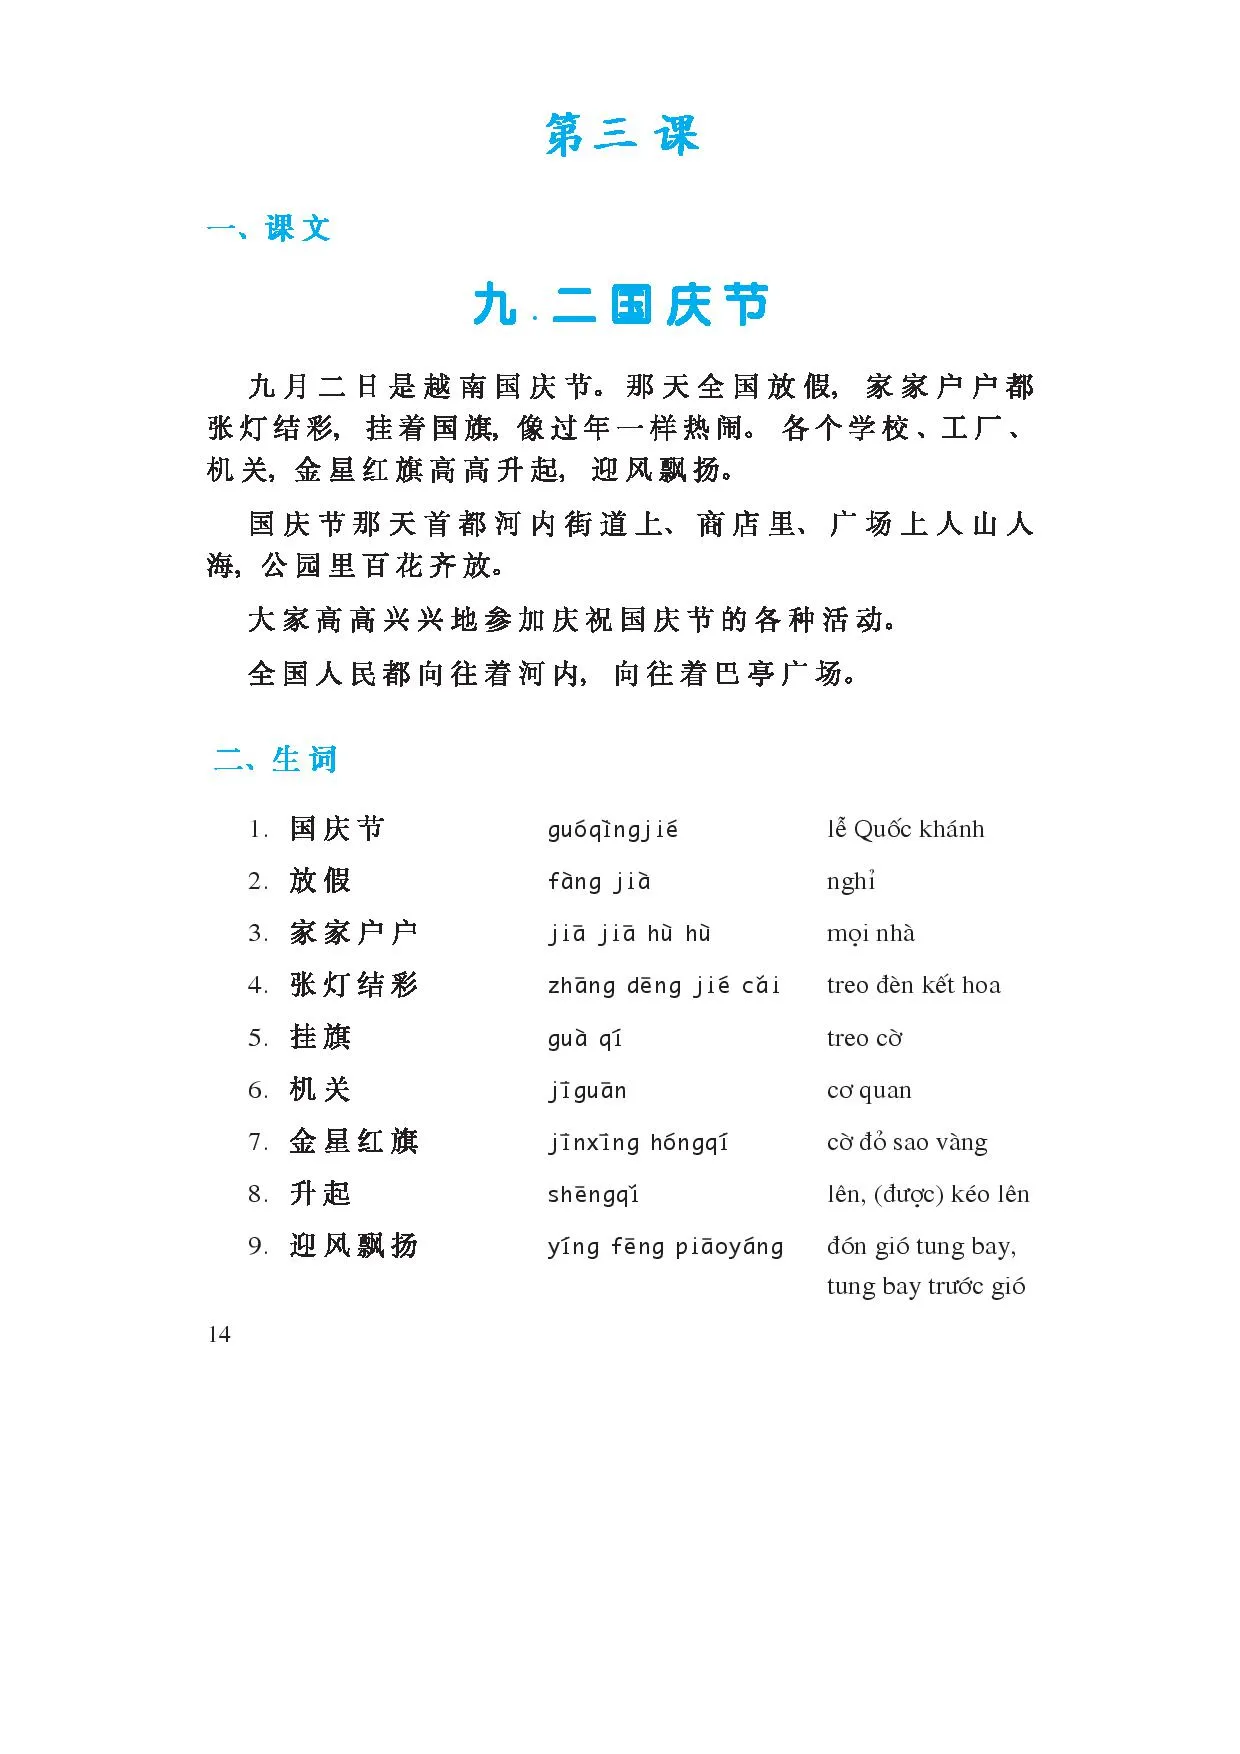 Bài3: 九.二国庆节 Tính từ làm trạng ngữ